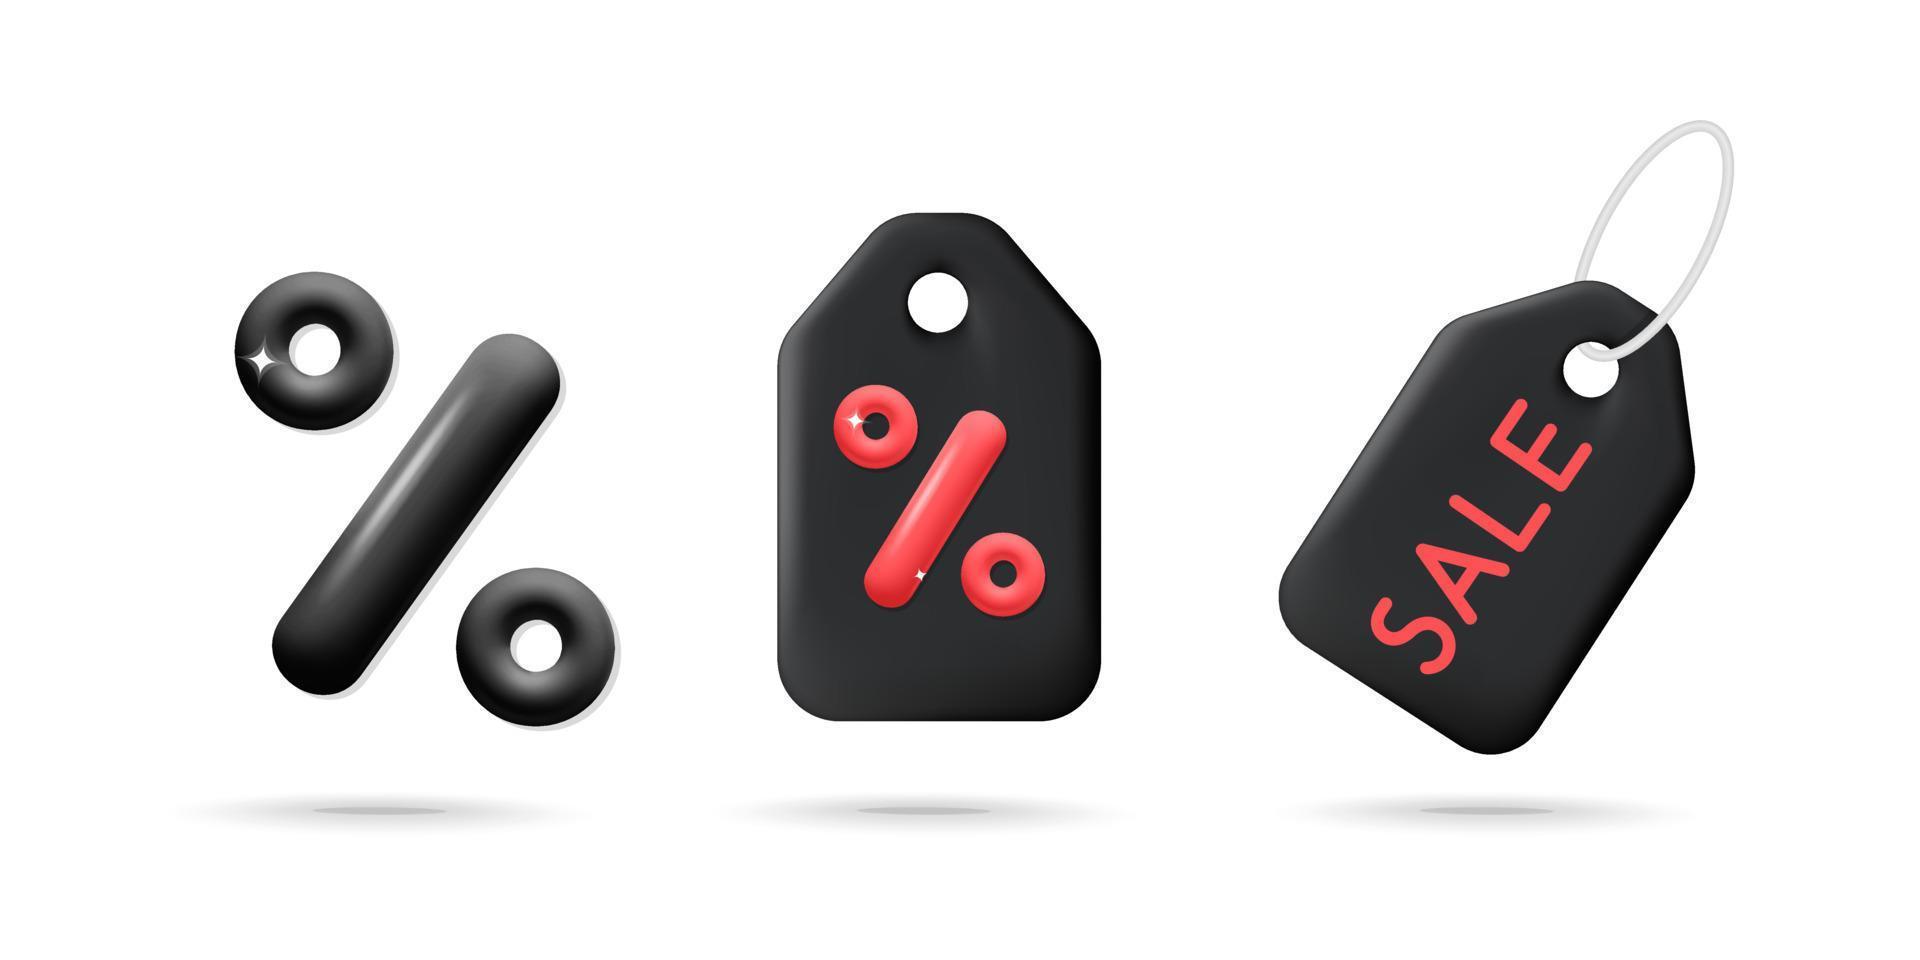 Collection de vecteurs 3d d'étiquettes d'étiquettes de réduction shopping noir et rouge pour la conception d'icônes vendredi noir et cyber lundi vecteur